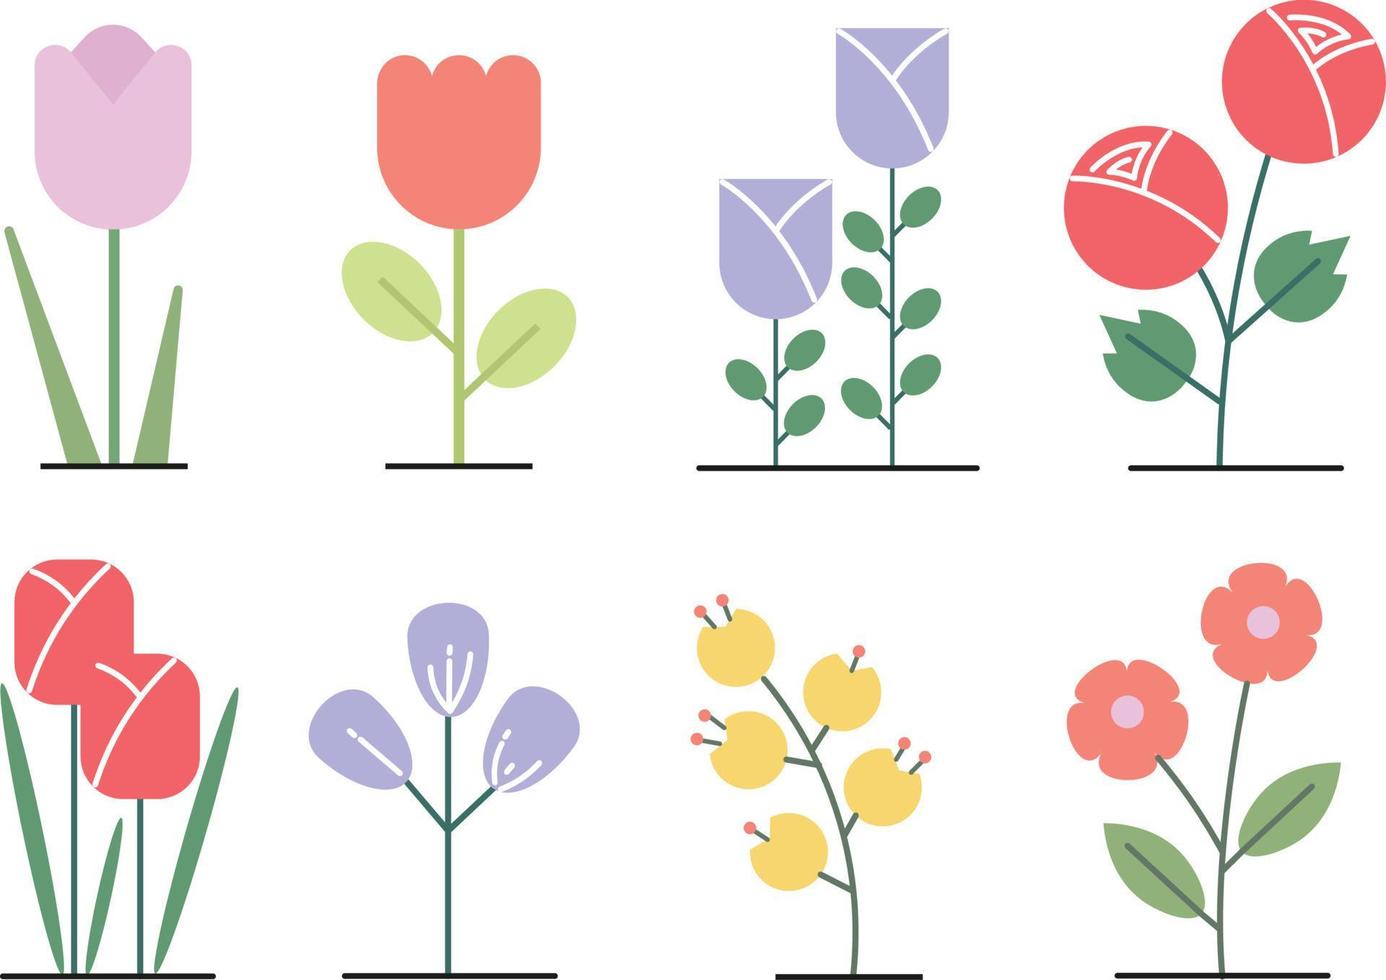 ilustraciones de vectores de flores pastel estilizadas planas mínimas